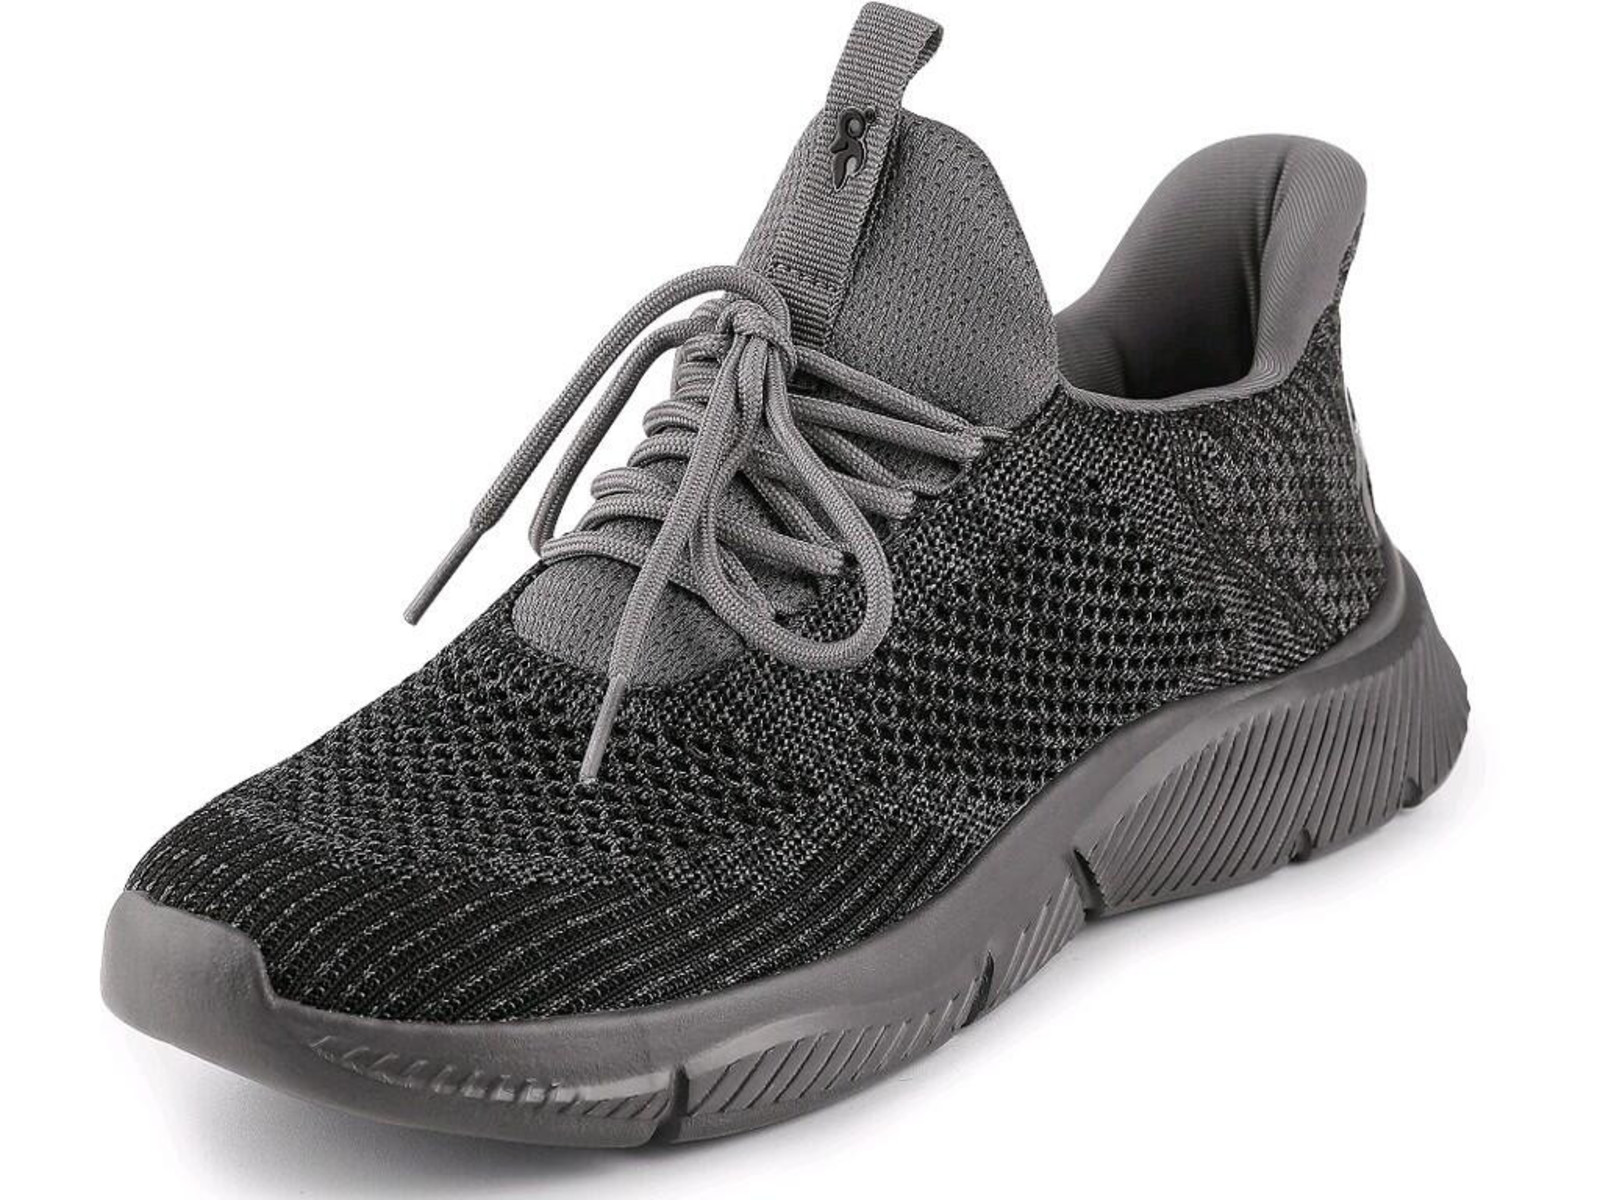 Voľnočasová obuv CXS Island Barbados - veľkosť: 45, farba: sivá/čierna